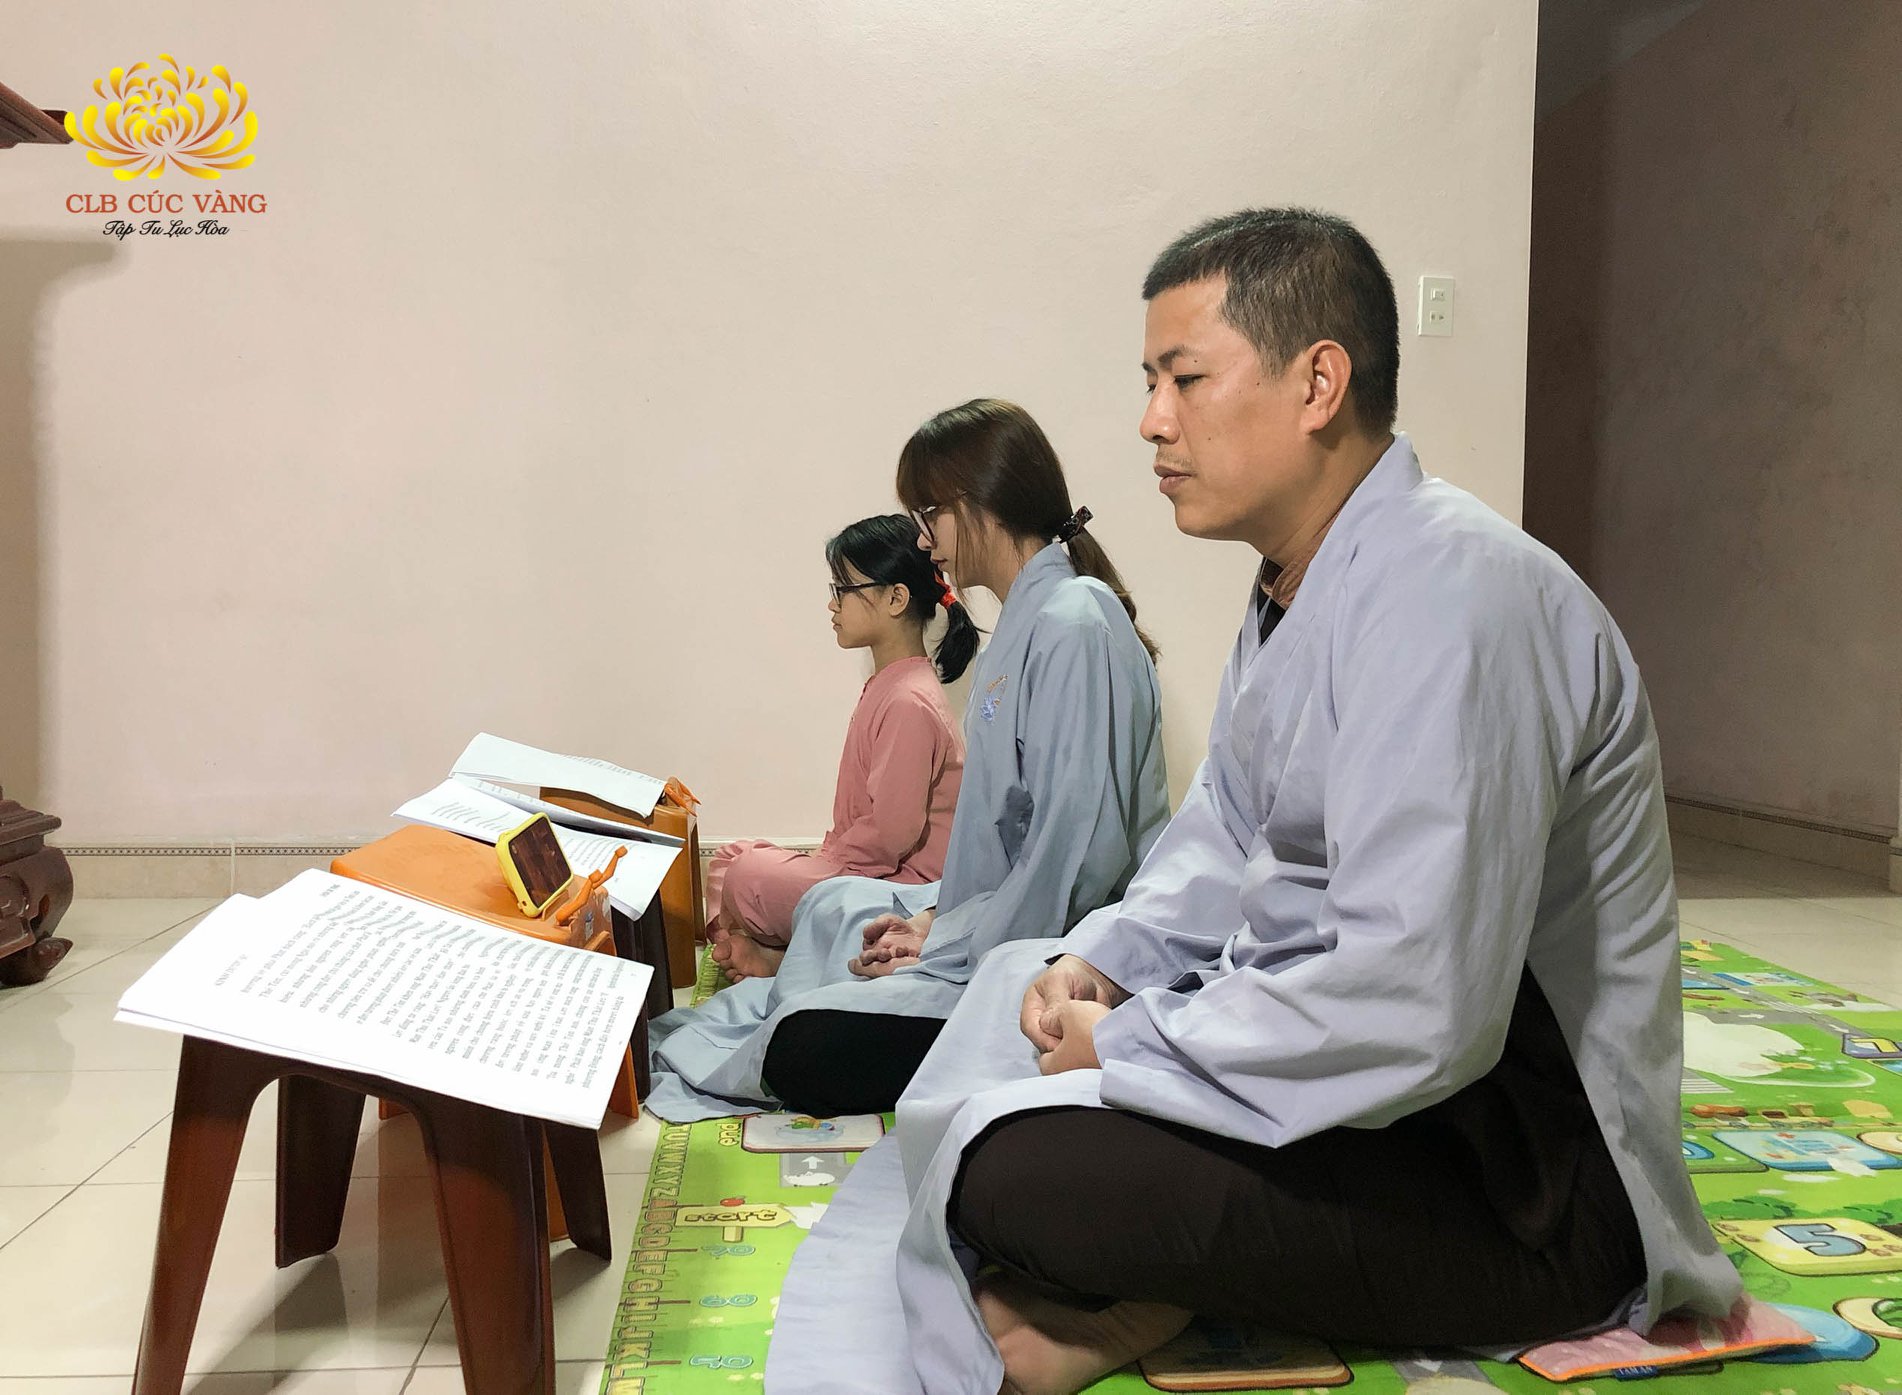 Gia đình cùng tu học Phật Pháp, chung sức đẩy lùi nạn dịch COVID-19